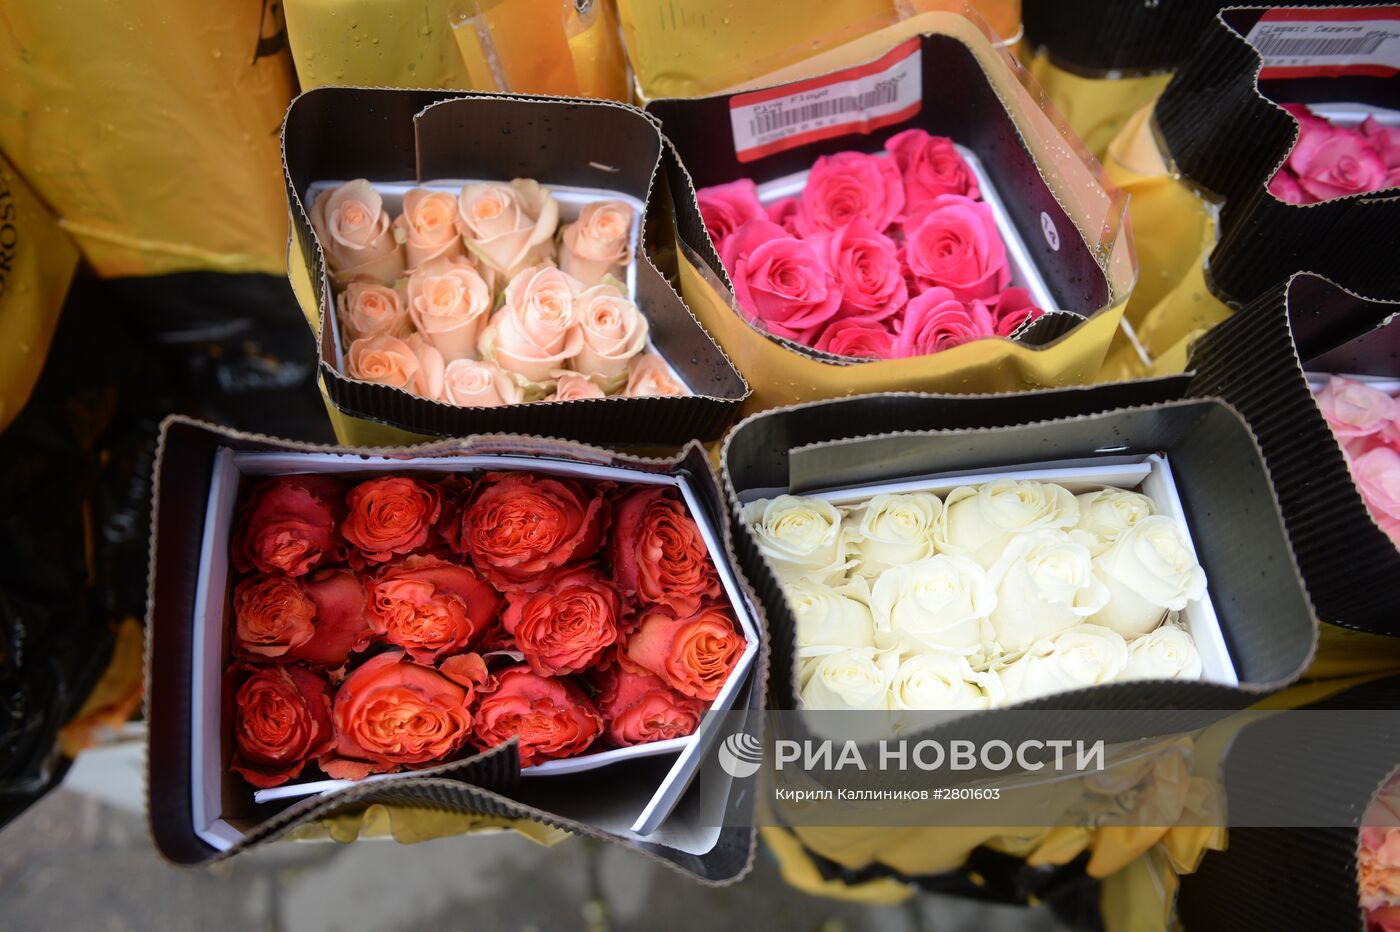 Продажа цветов к 8 марта в Москве